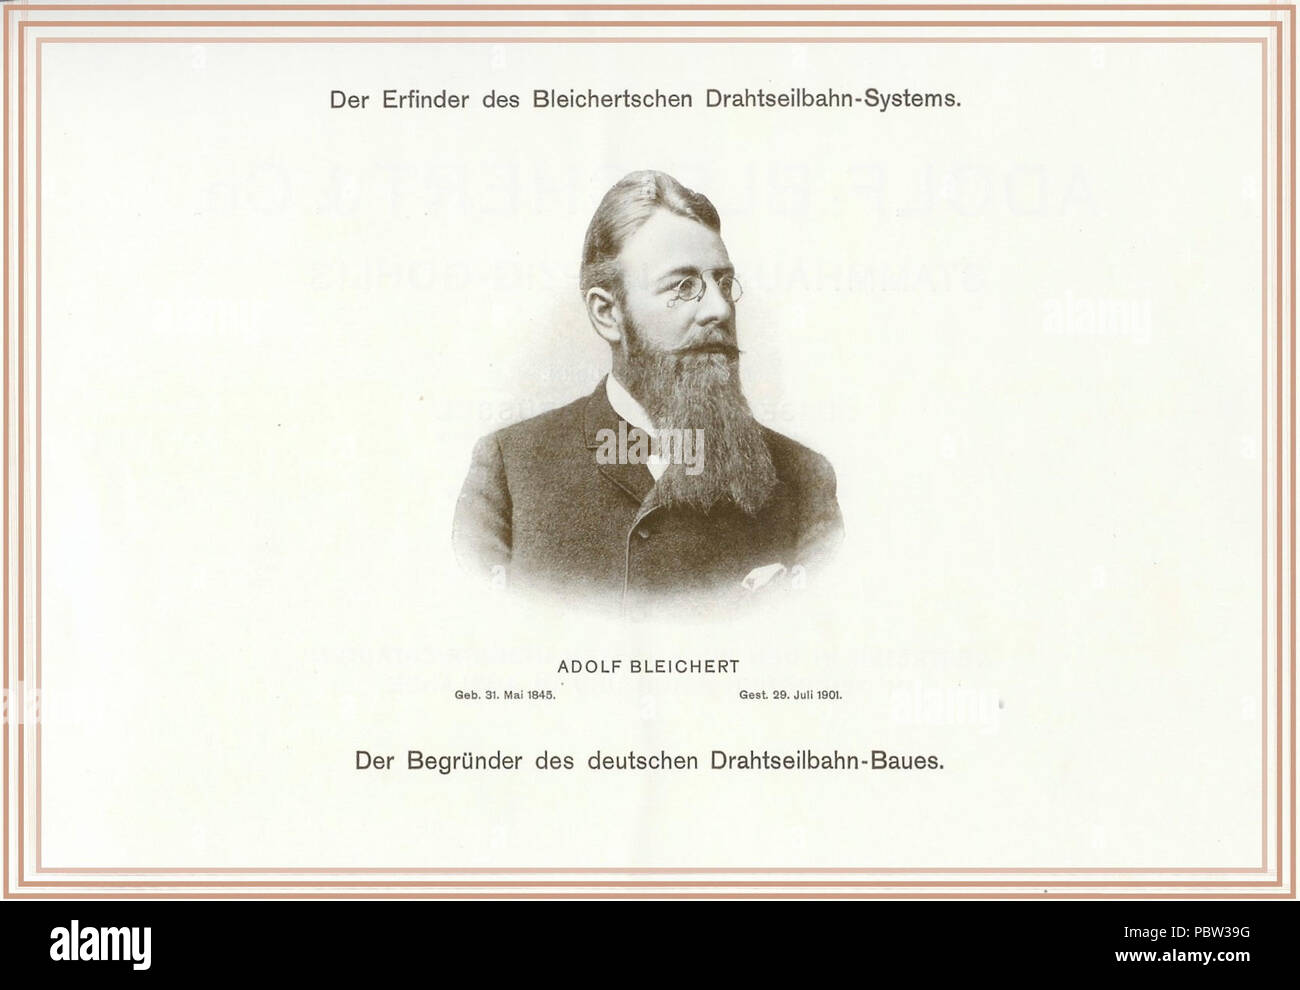 Adolf Bleichert - Gründer des Bleichertschen Drahtseilbahn Systems (BDS). Stock Photo